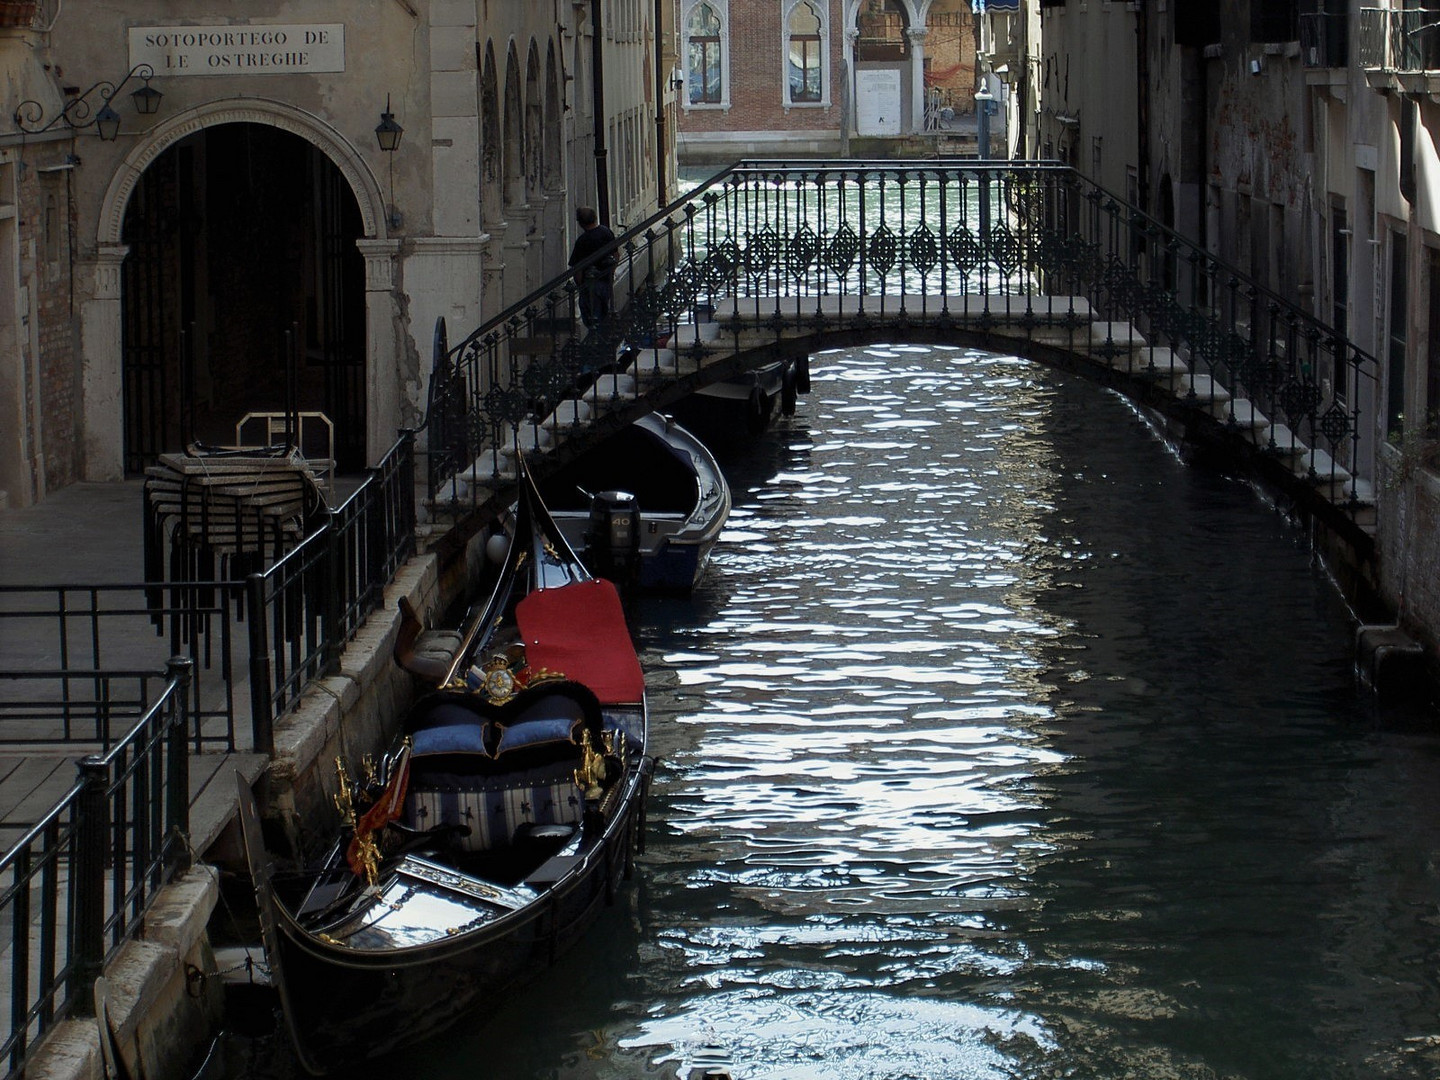  Venedig: Ein Ort der Harmonie und Stille.